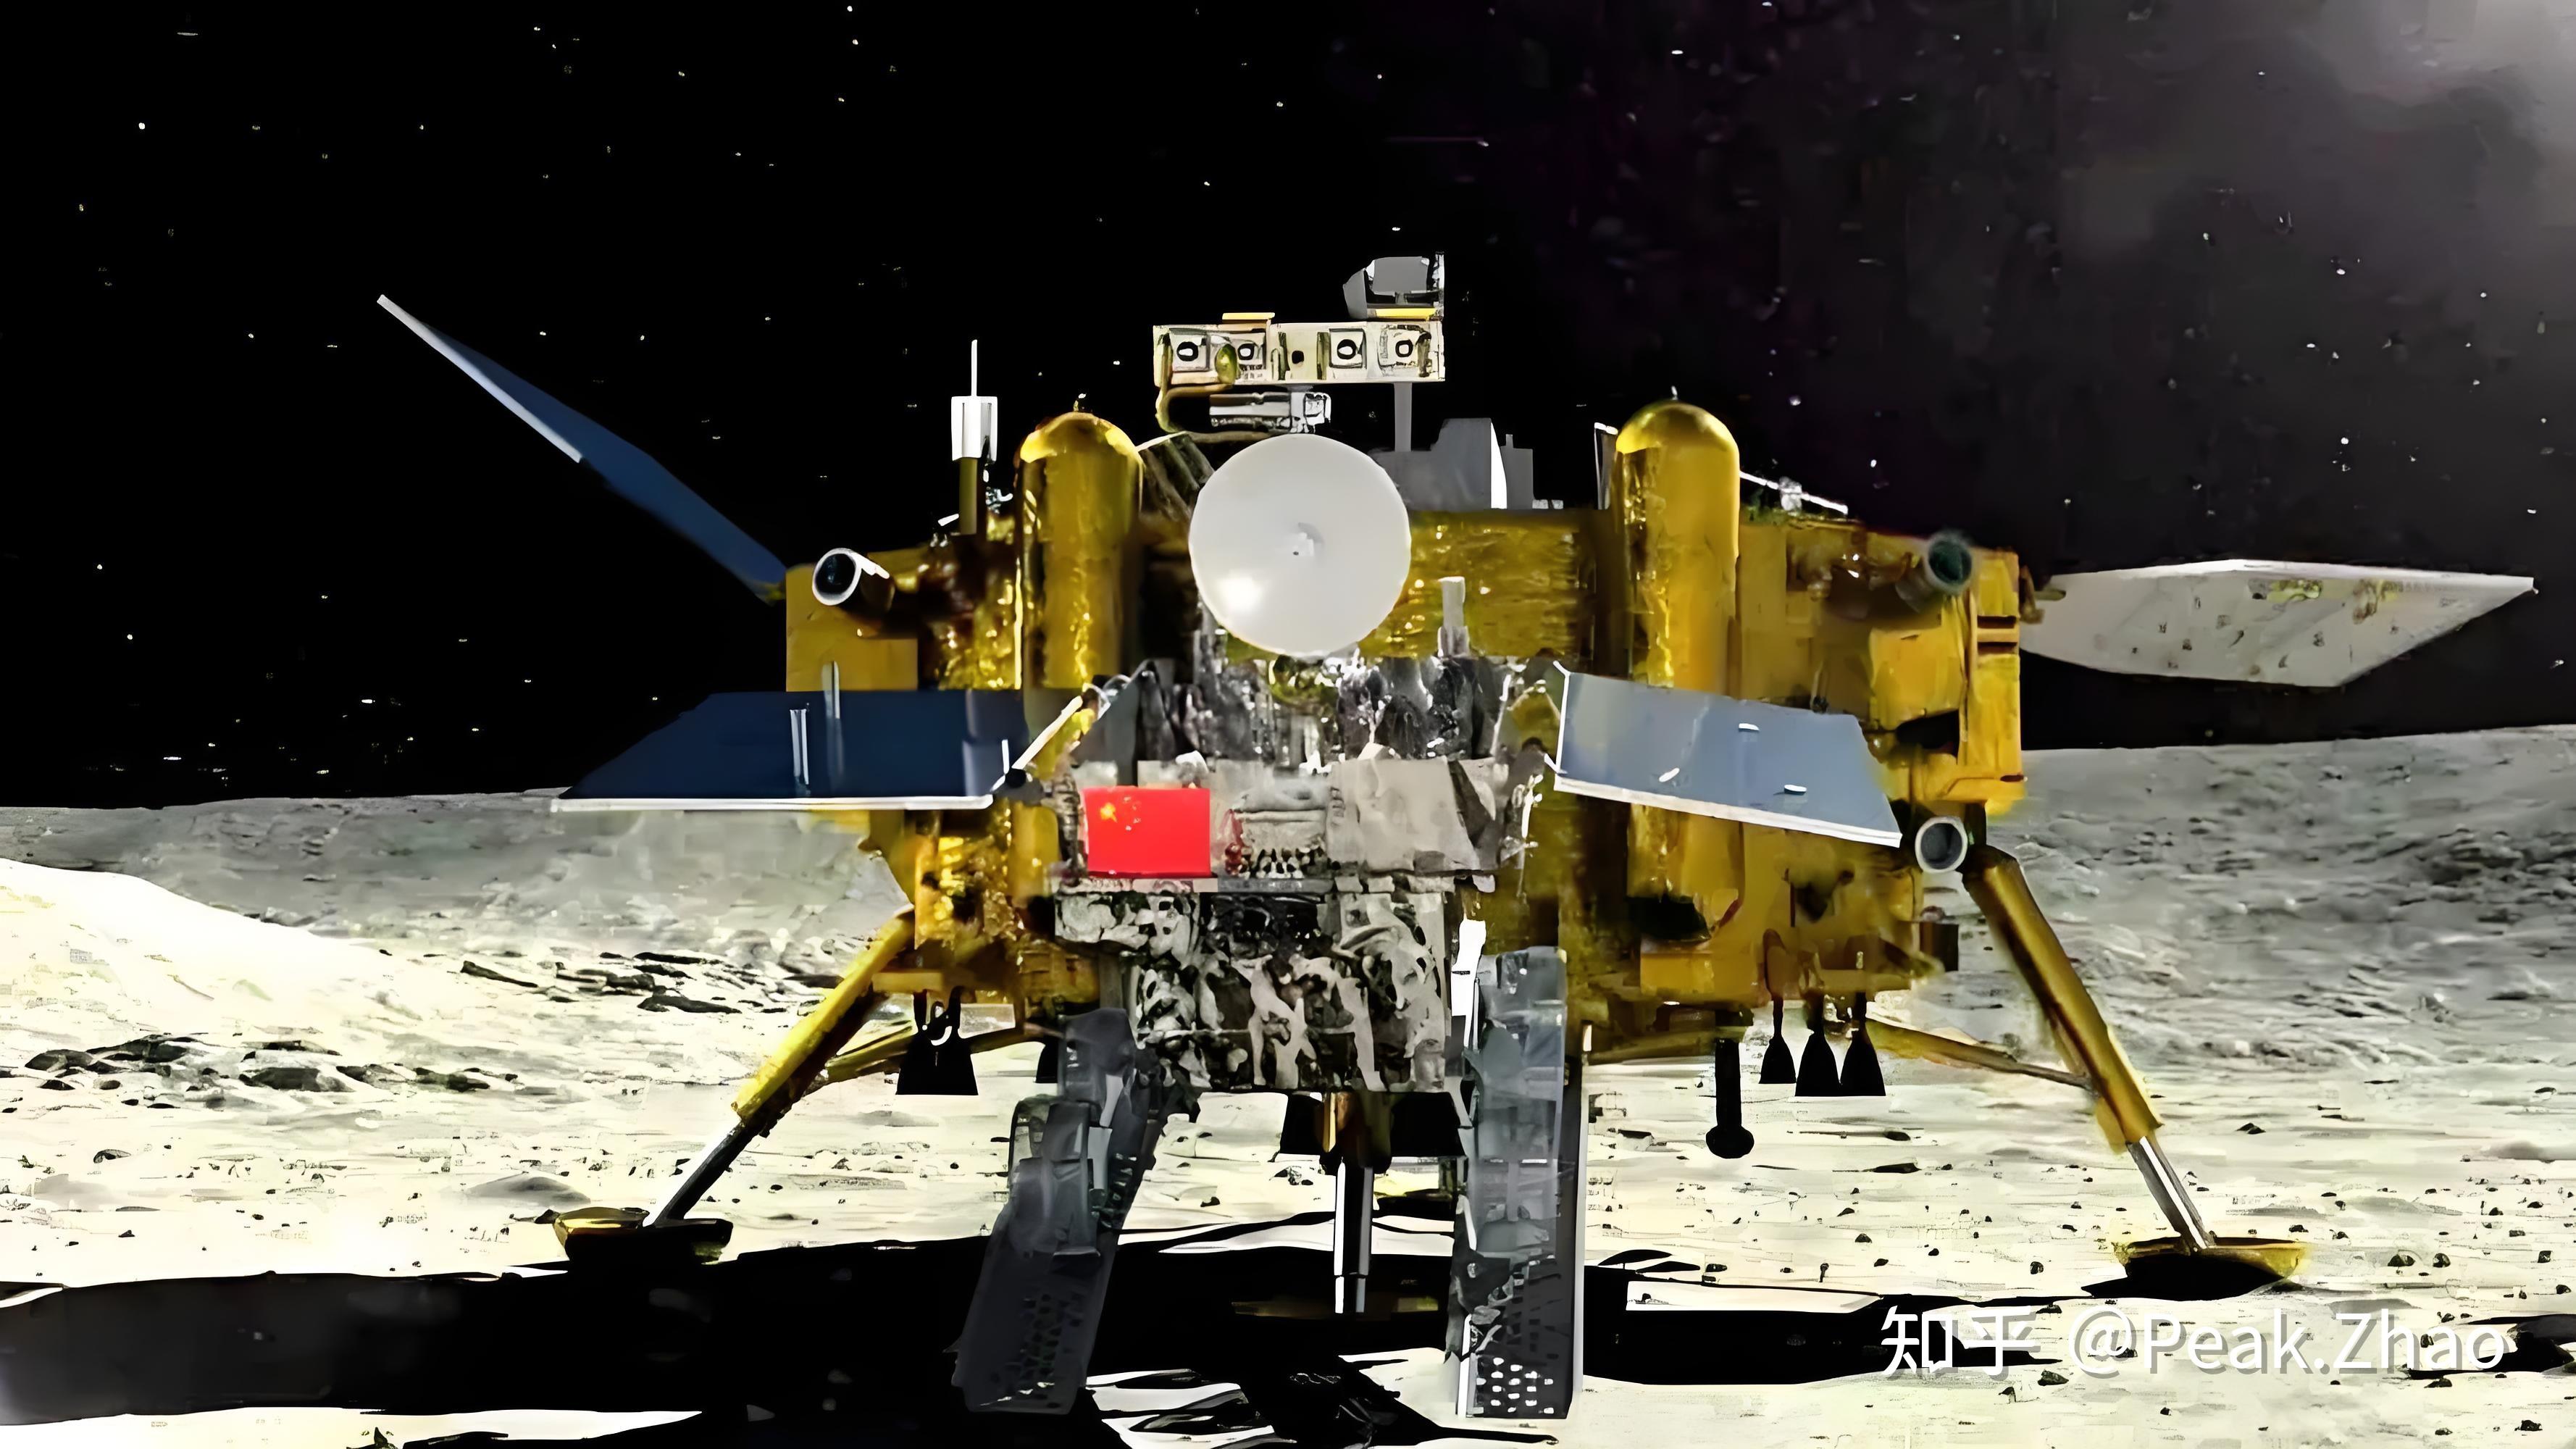 嫦娥六号发射任务圆满成功 开启月球背面采样返回之旅 - 新闻频道 - 中山网